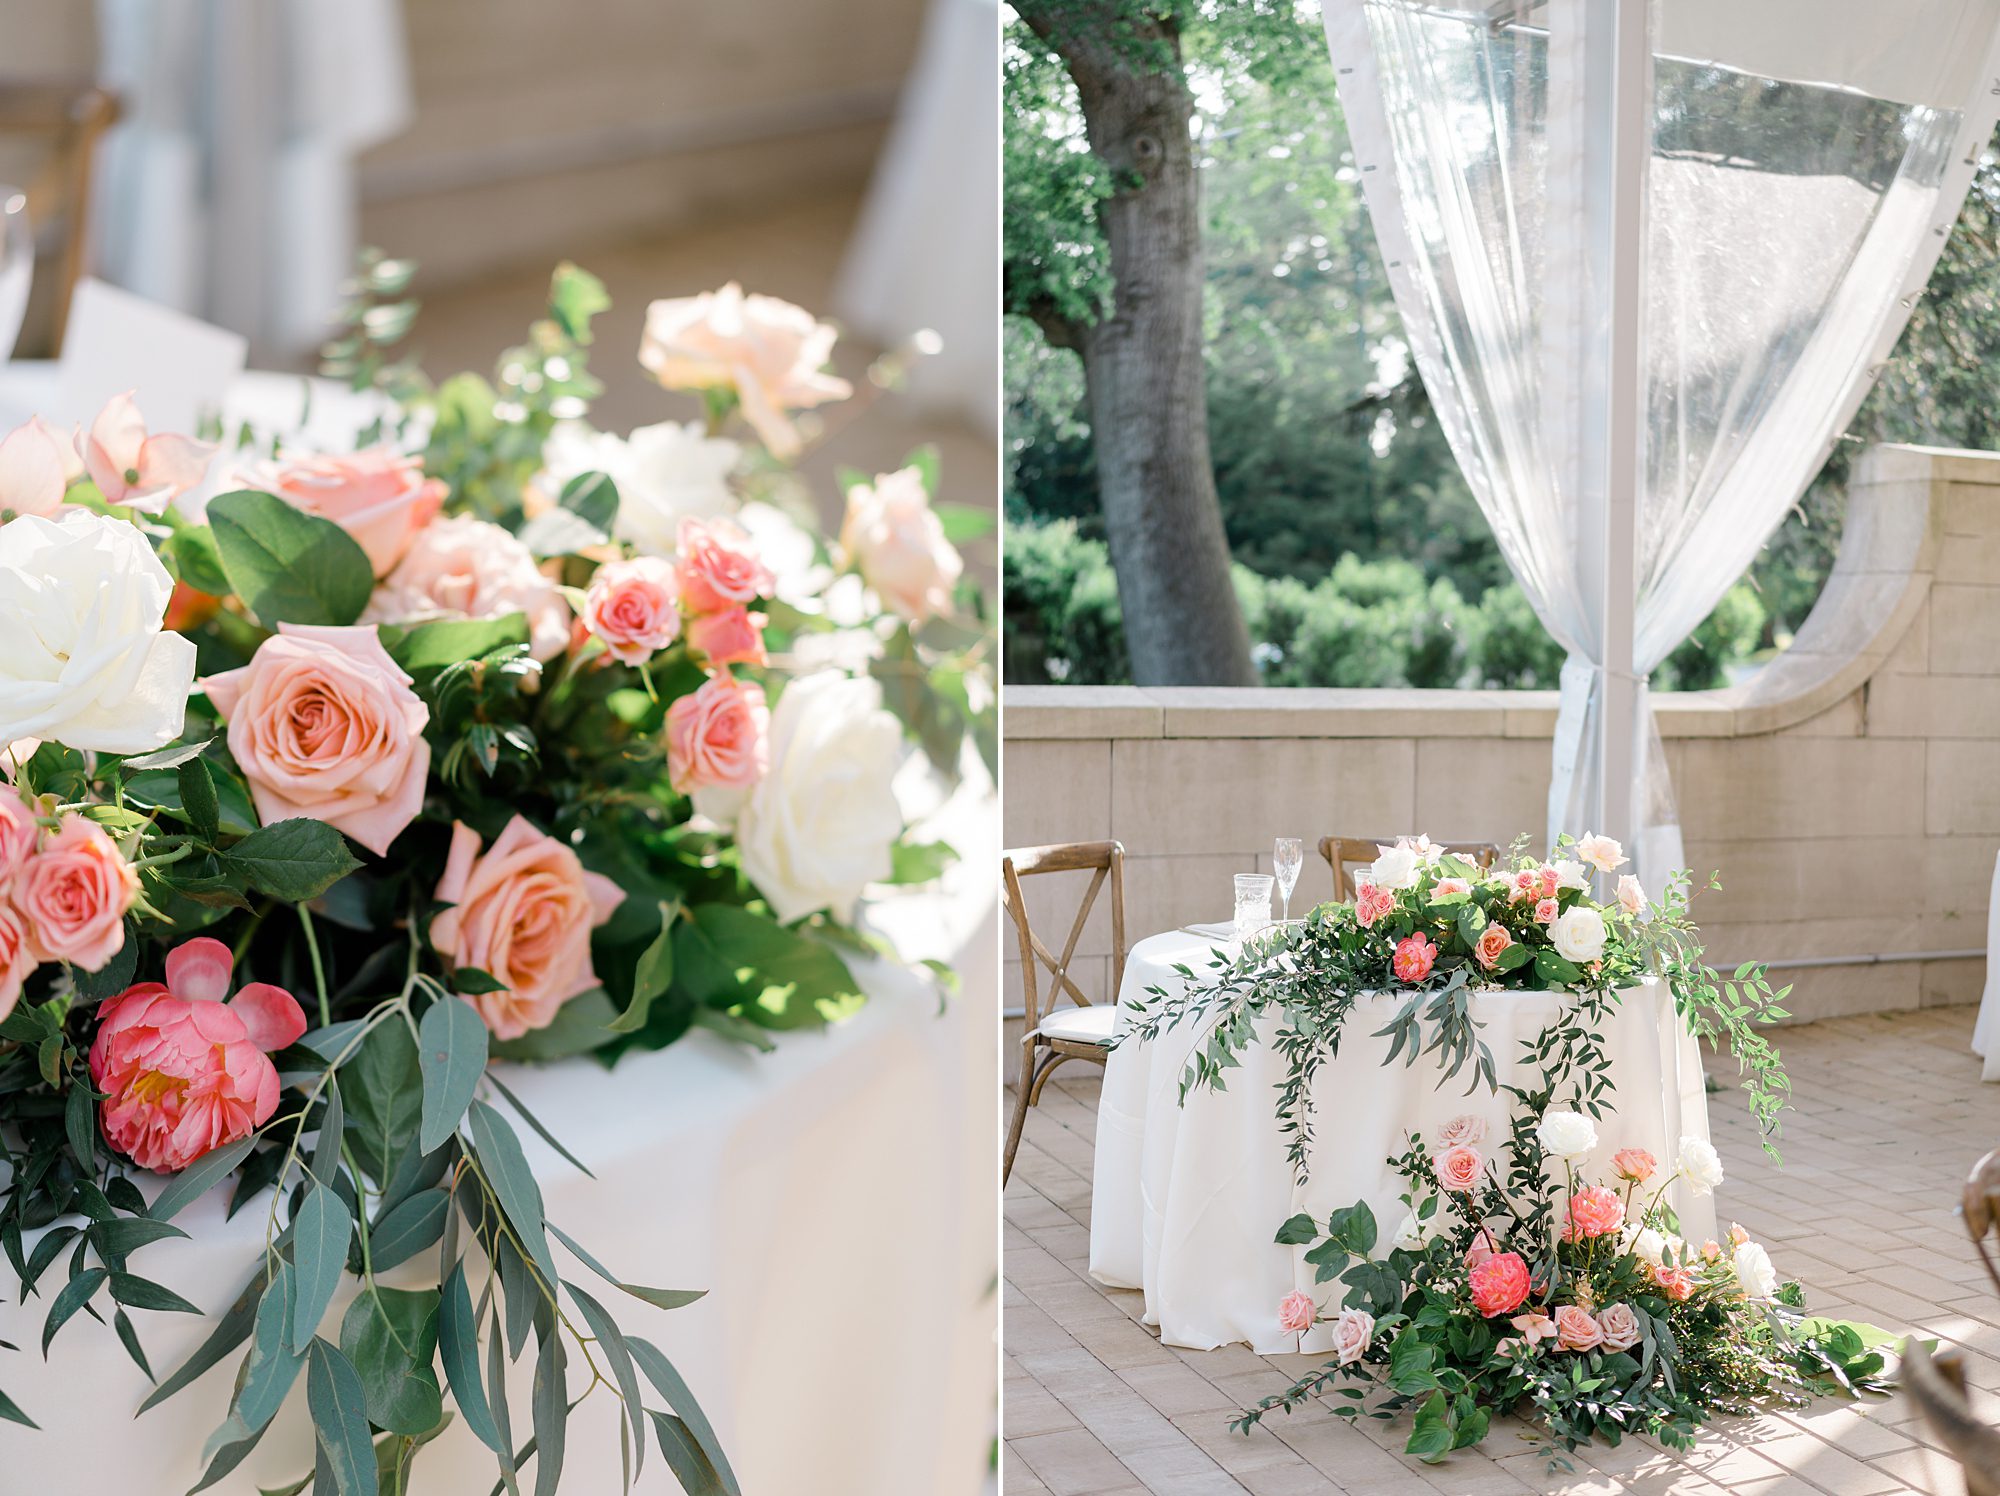 Romantic Curtis Arboretum Wedding reception details